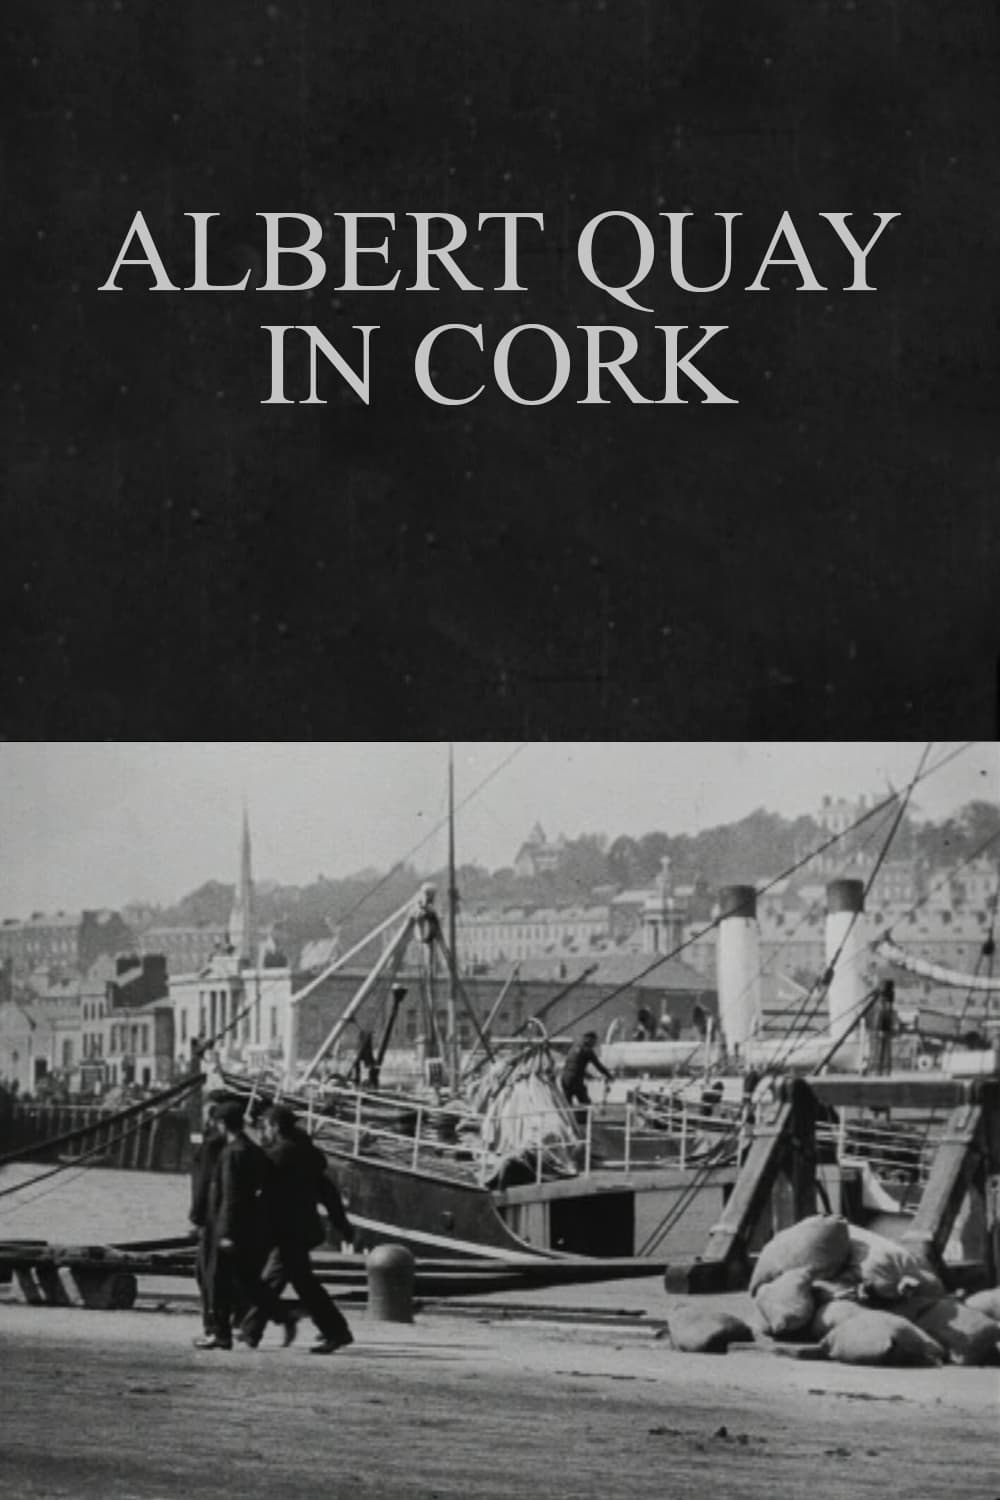 Albert Quay in Cork